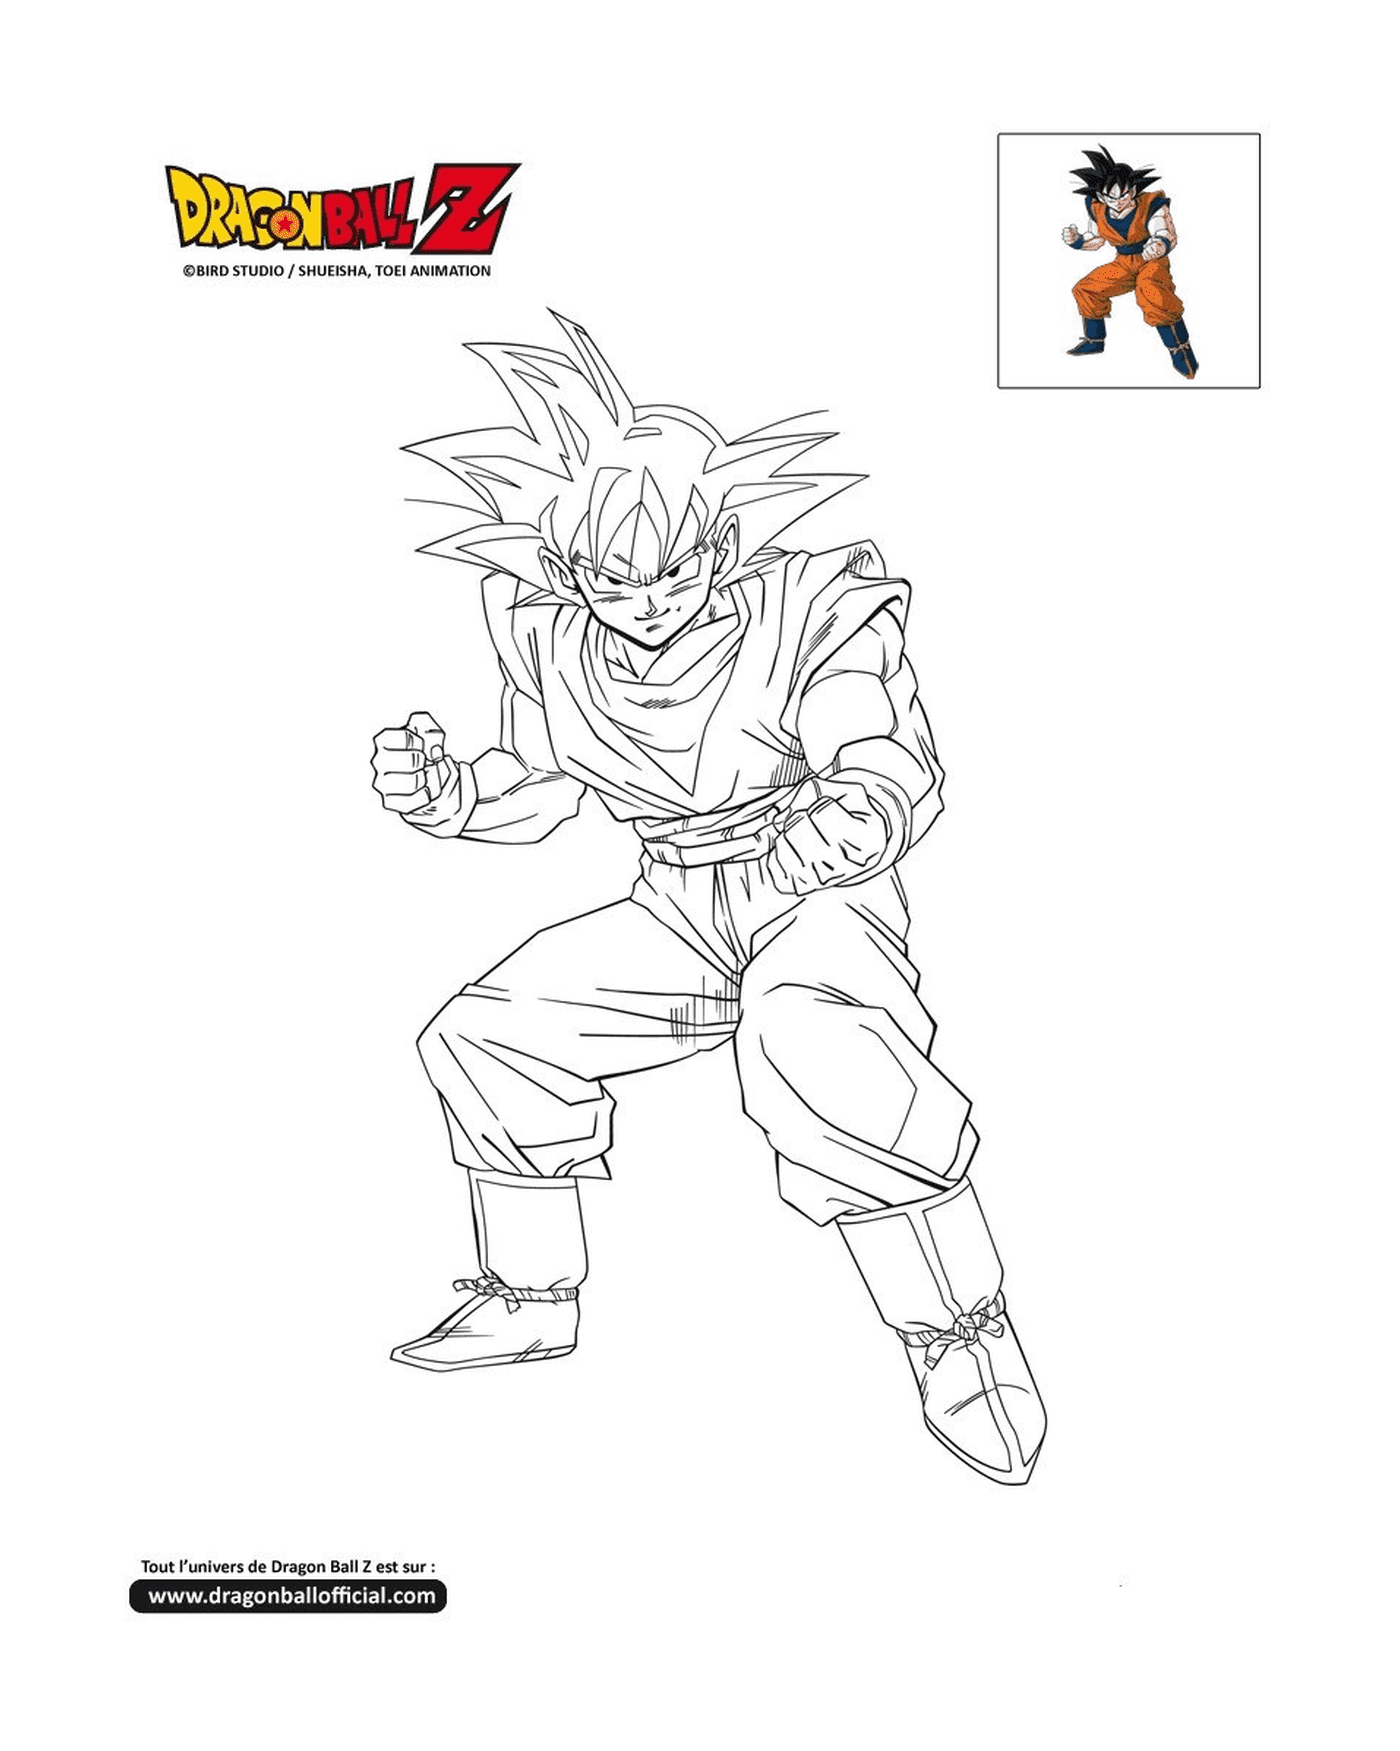  Goku ready to fight in Dragon Ball Z 